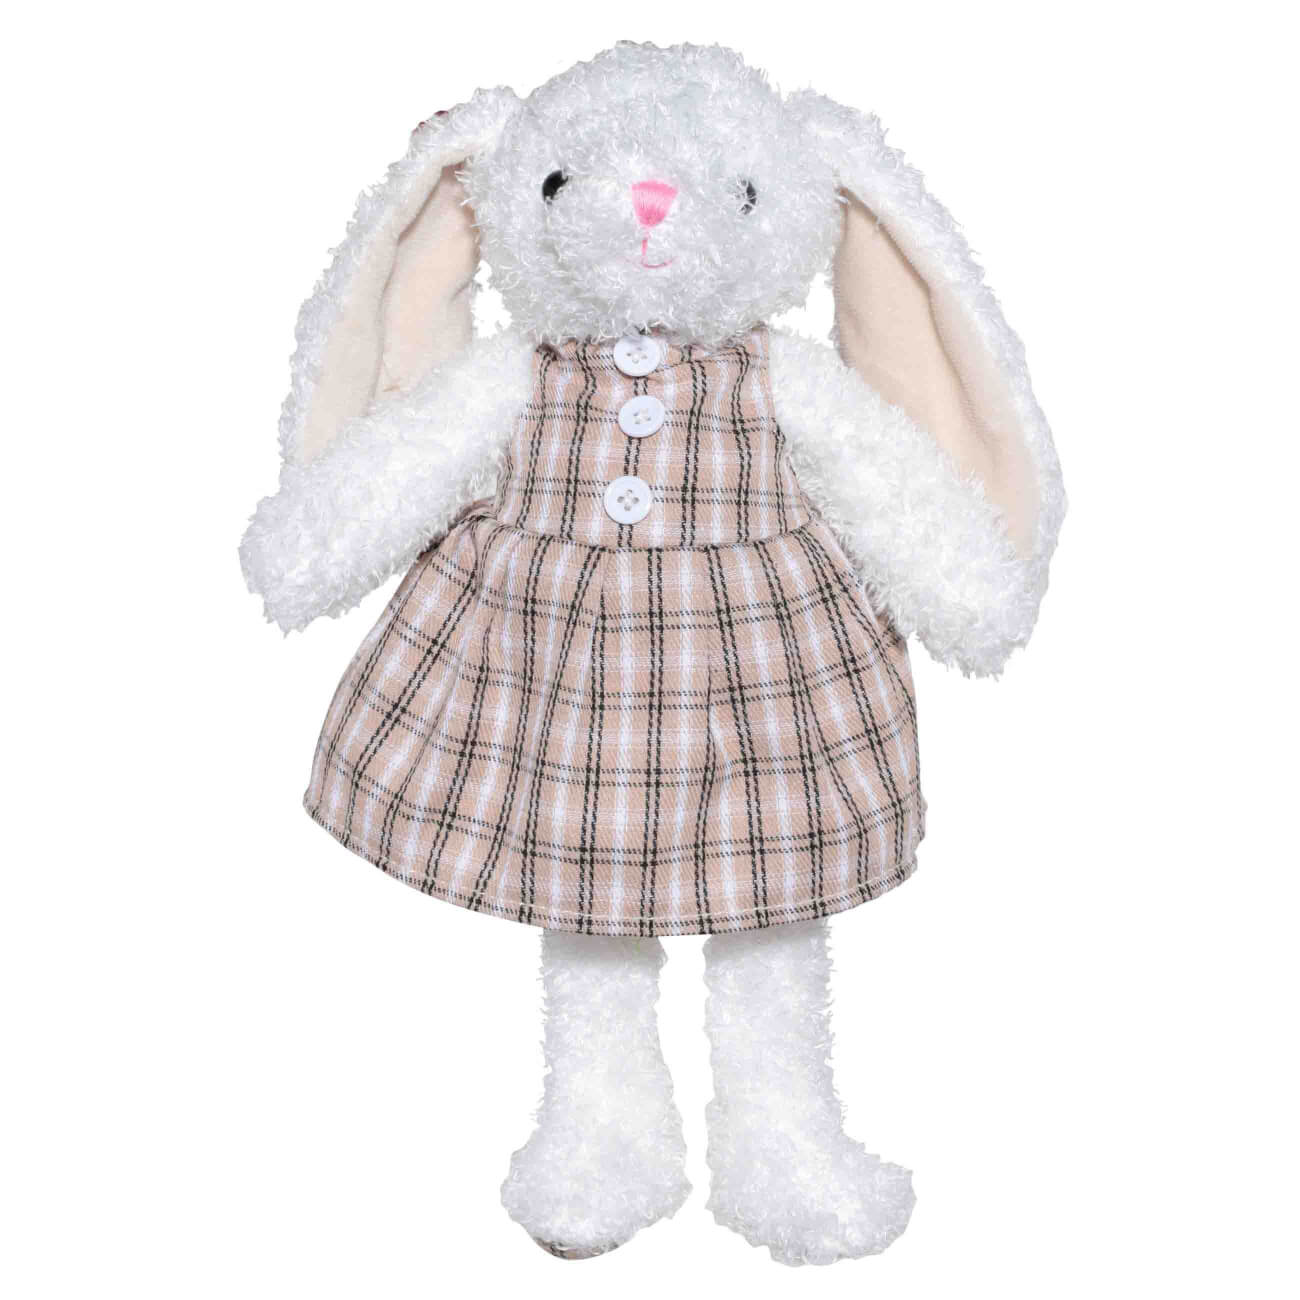 Игрушка, 21 см, мягкая, полиэстер, бежевая, Крольчиха в платье, Rabbit мягкая игрушка медведь с бантиком 22 см